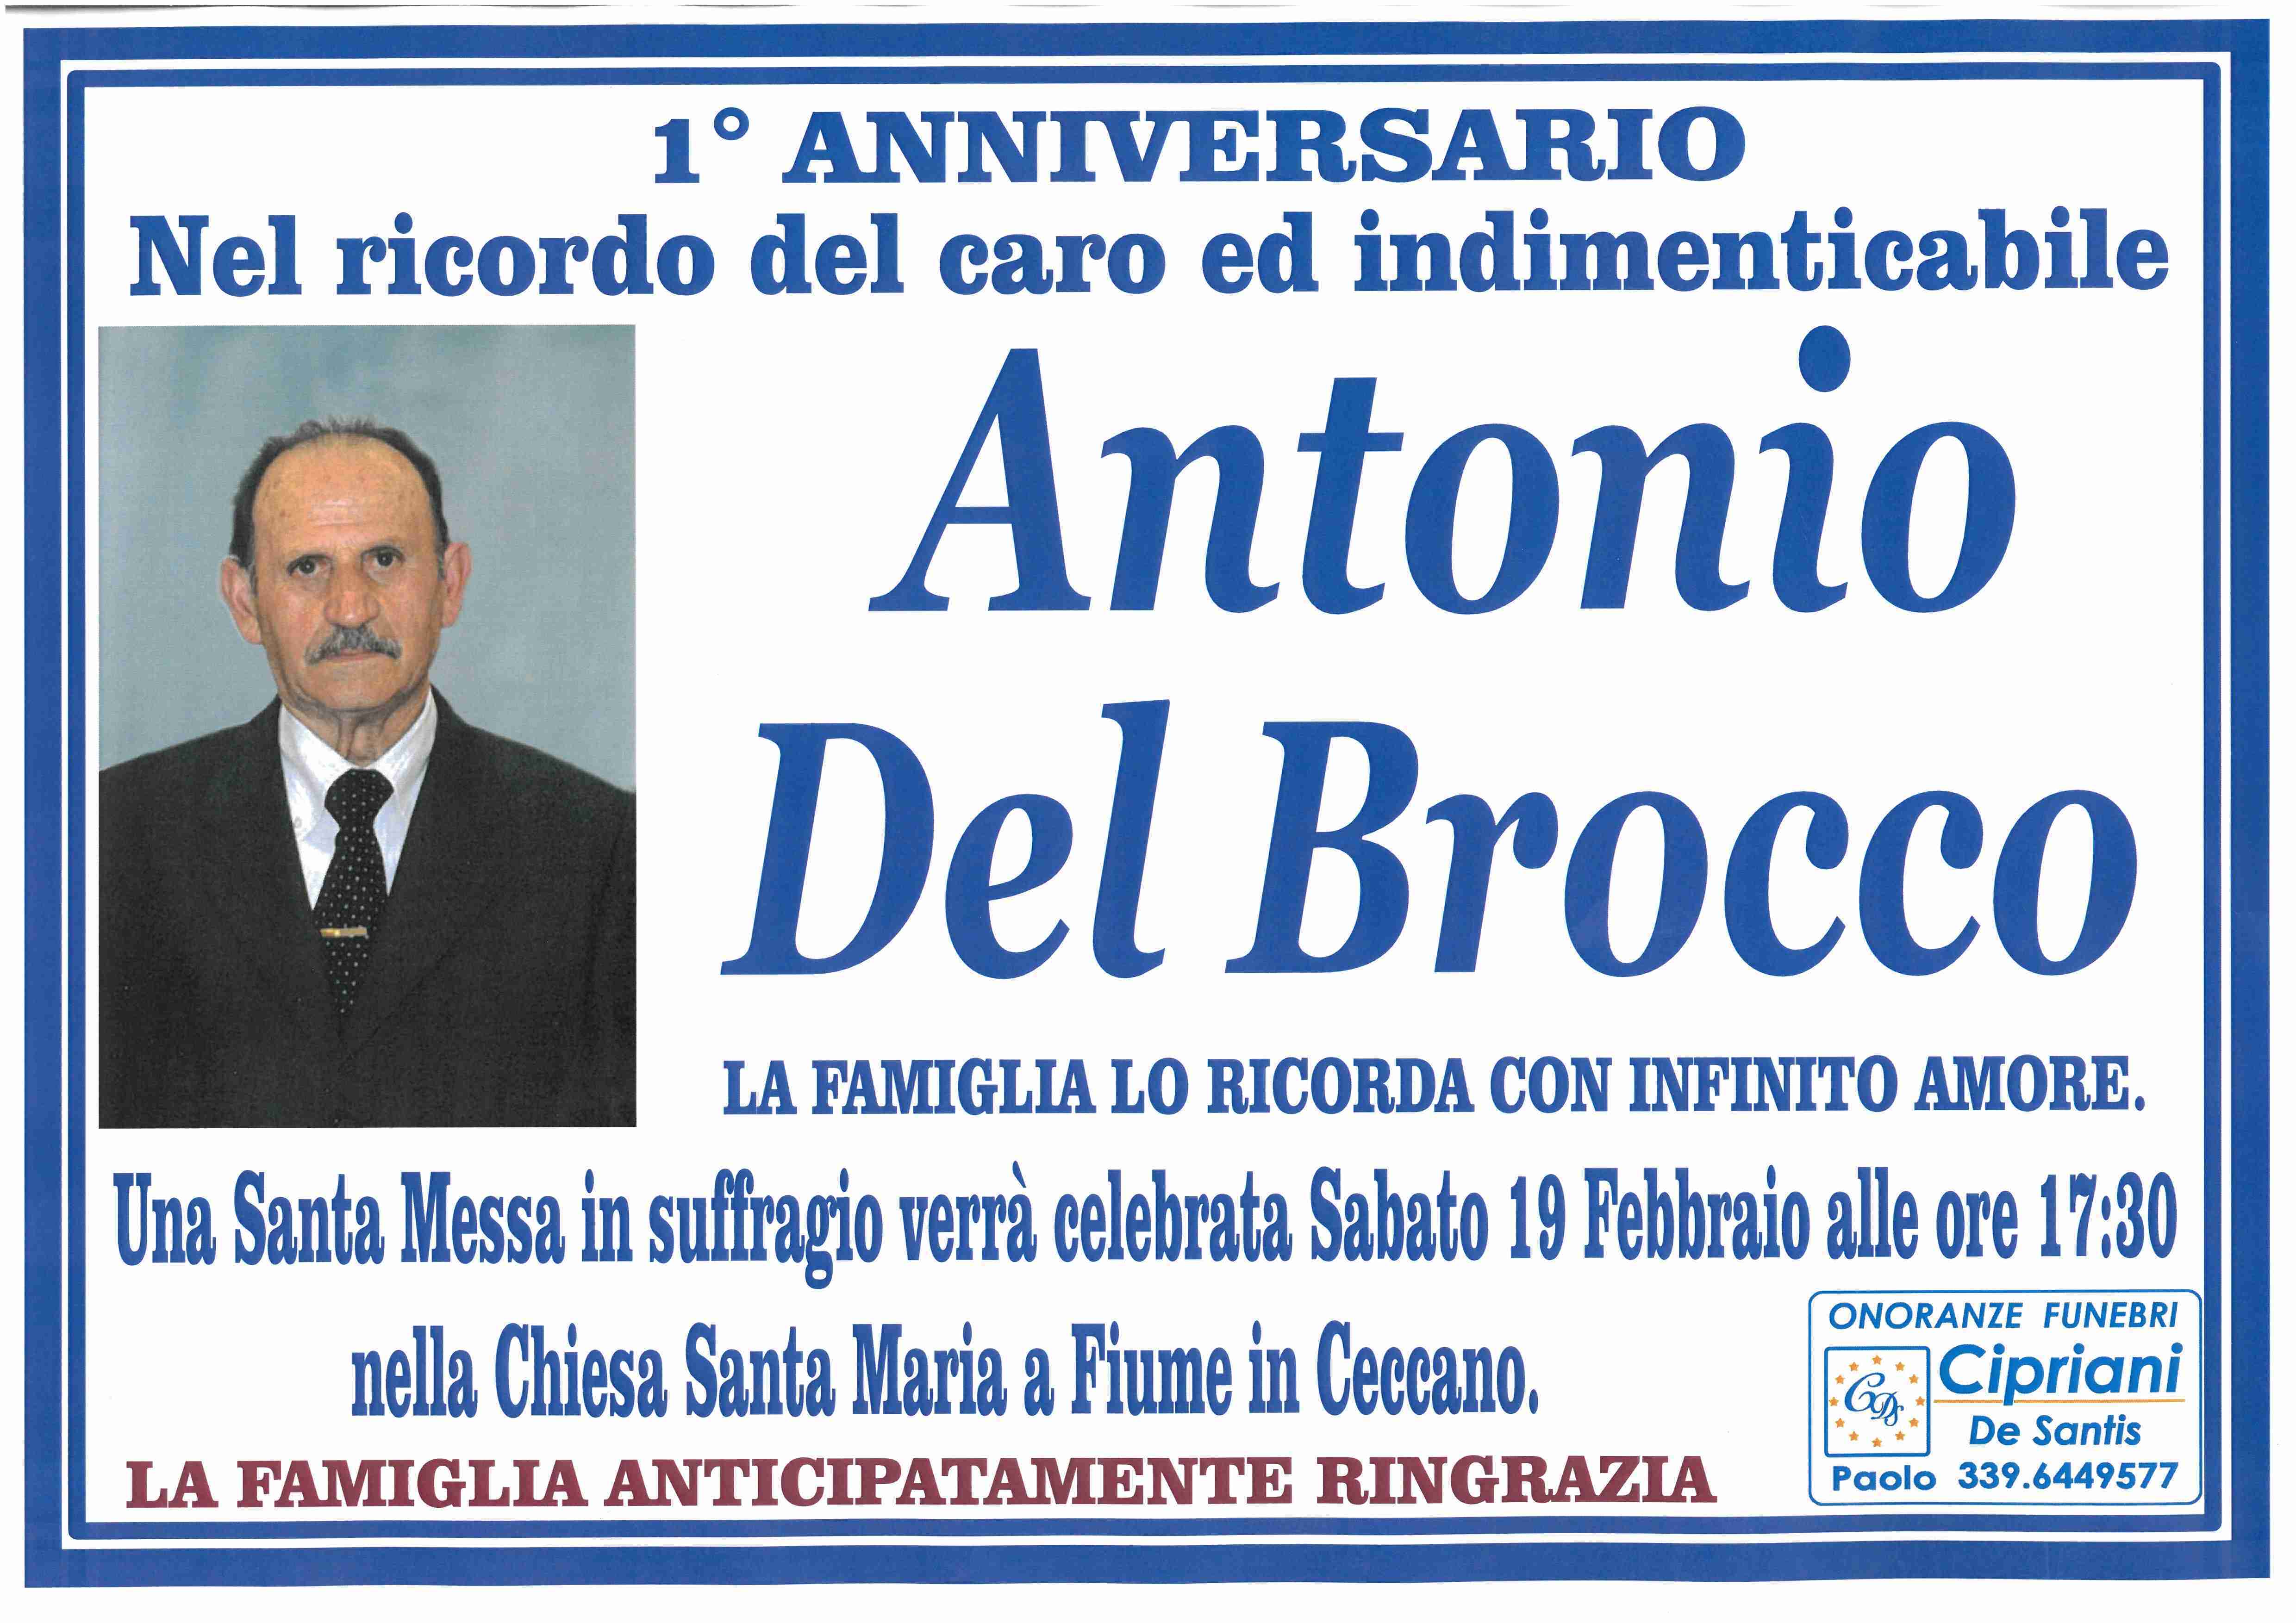 Antonio Del Brocco